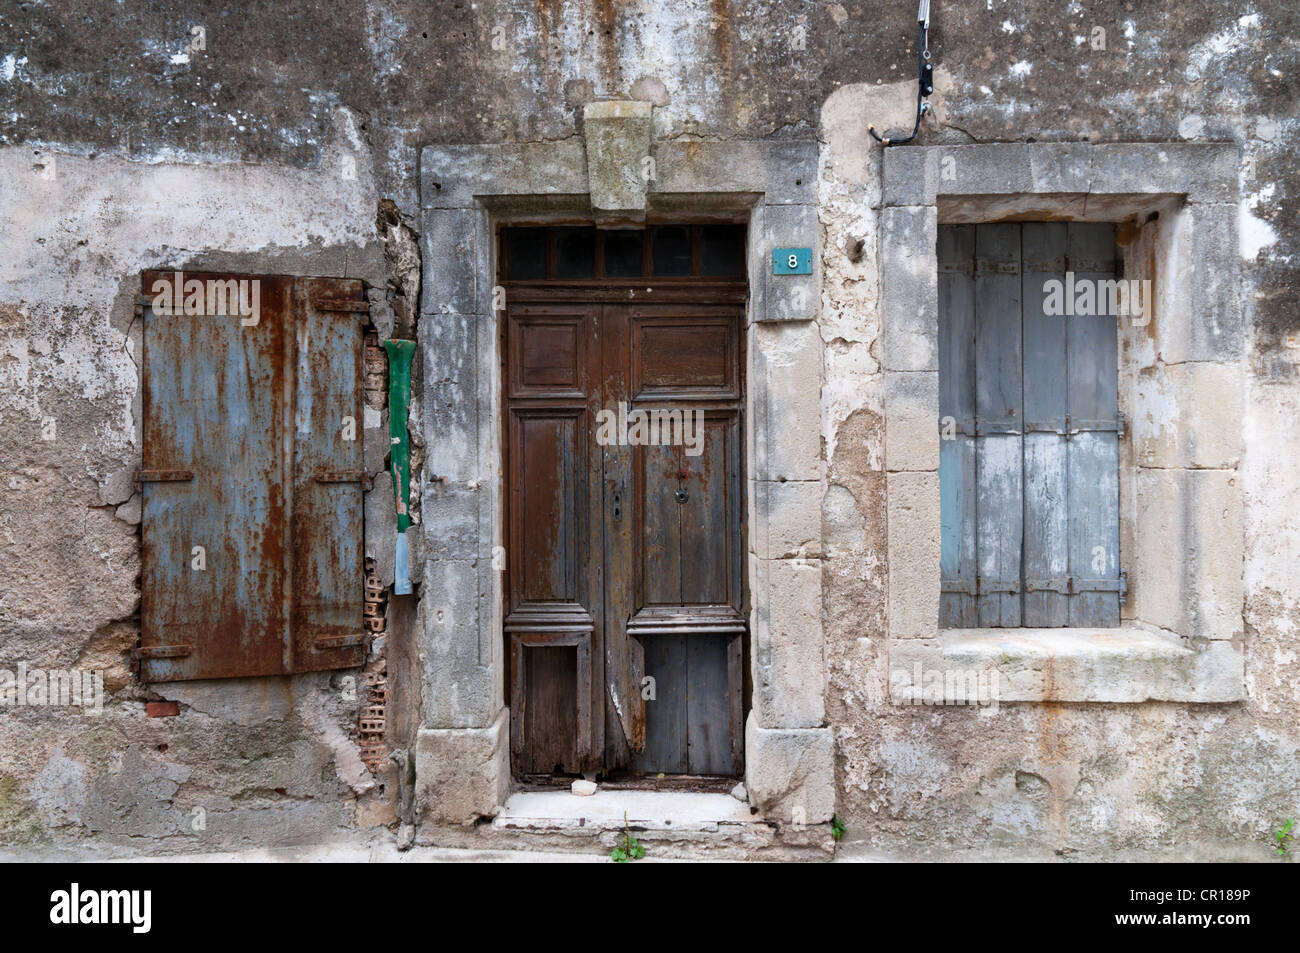 Maison aux volets fermés, dans le sud de la France. Banque D'Images